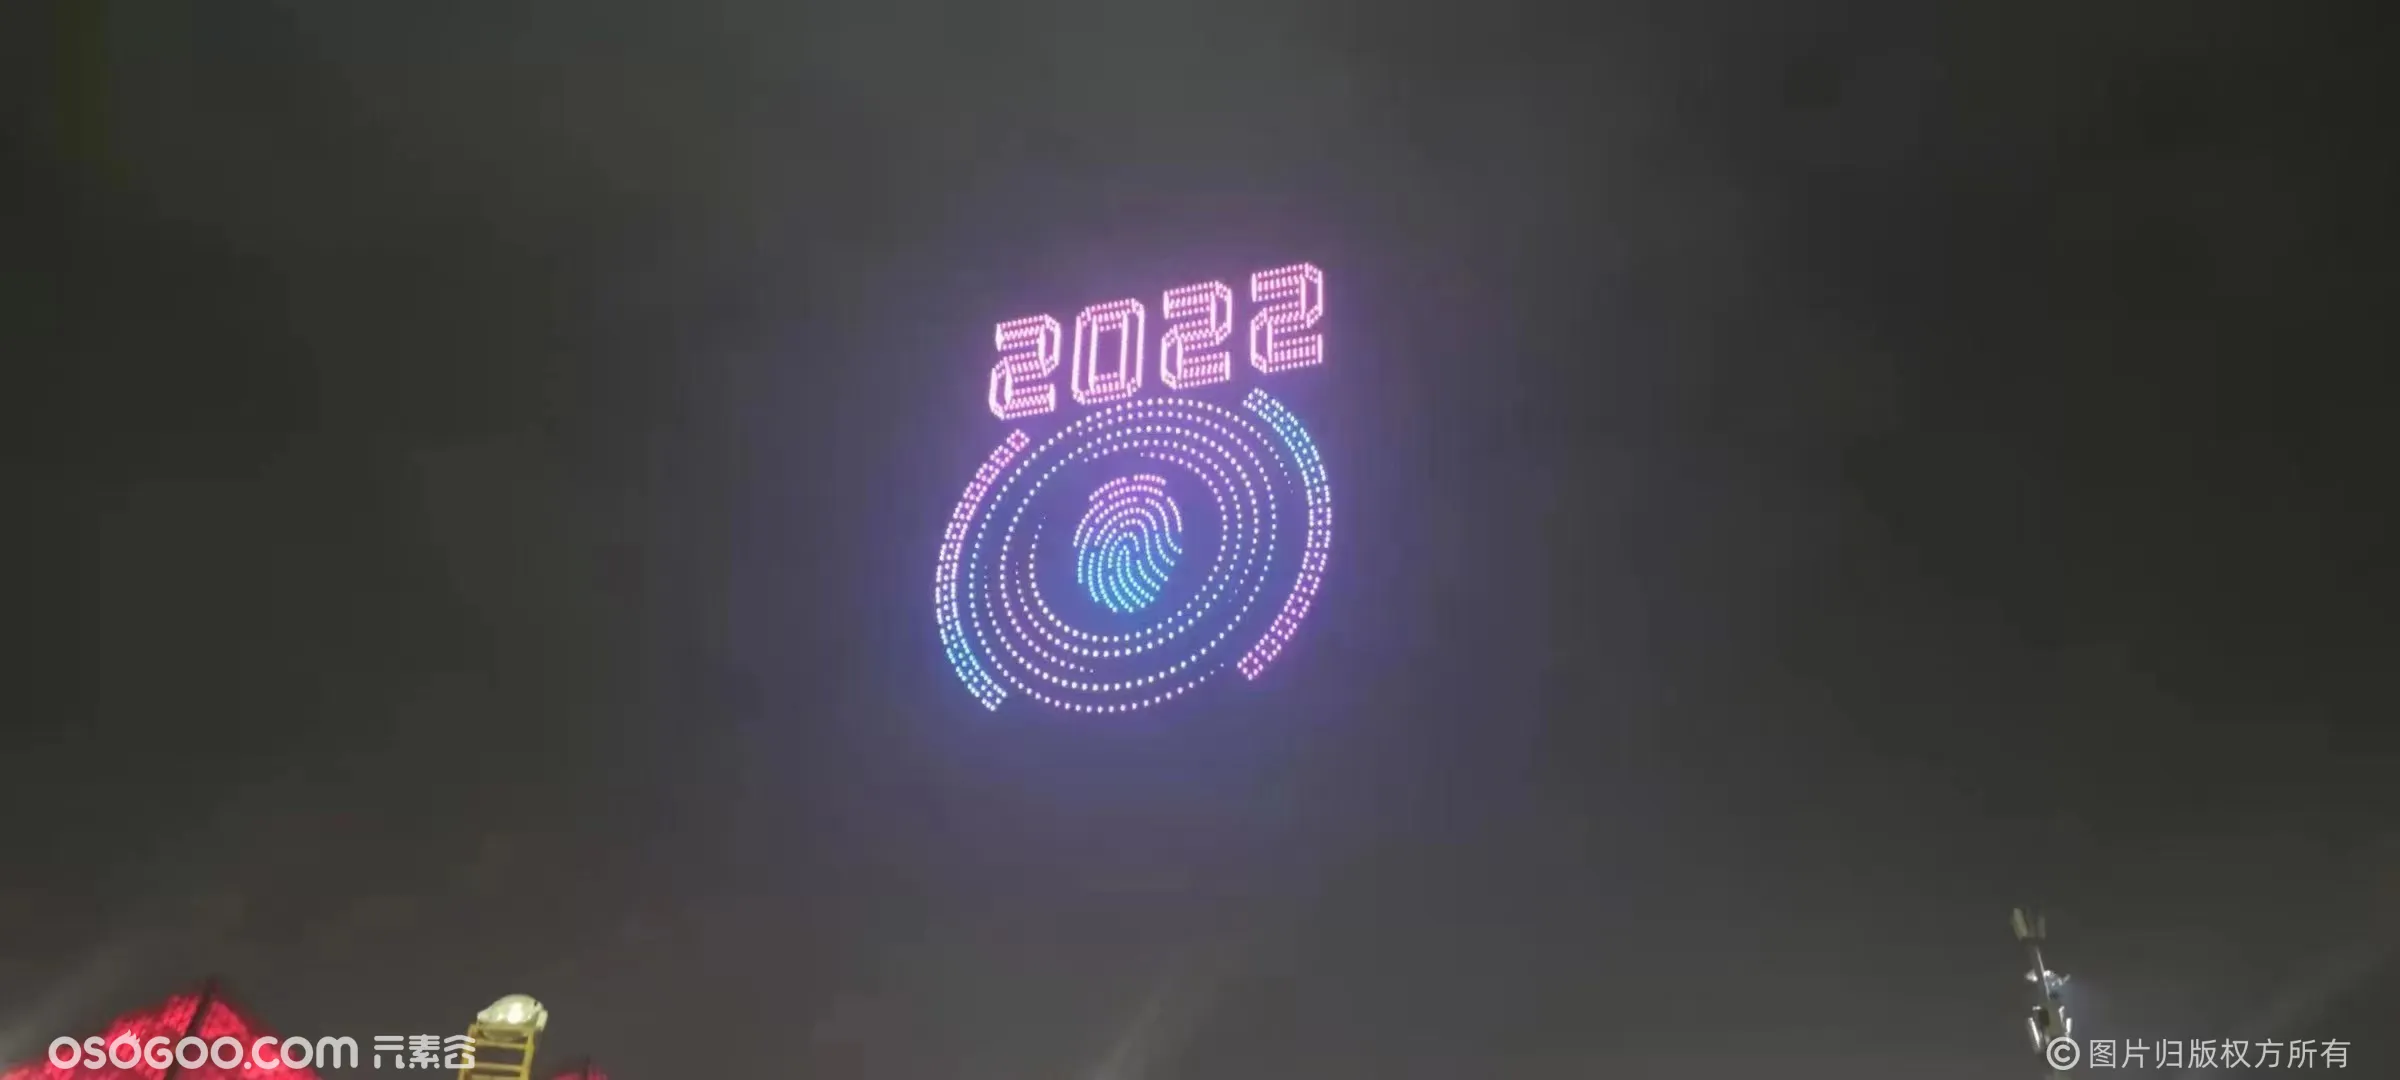 深圳跨年喜迎新年 2022台无人机闪耀夜空